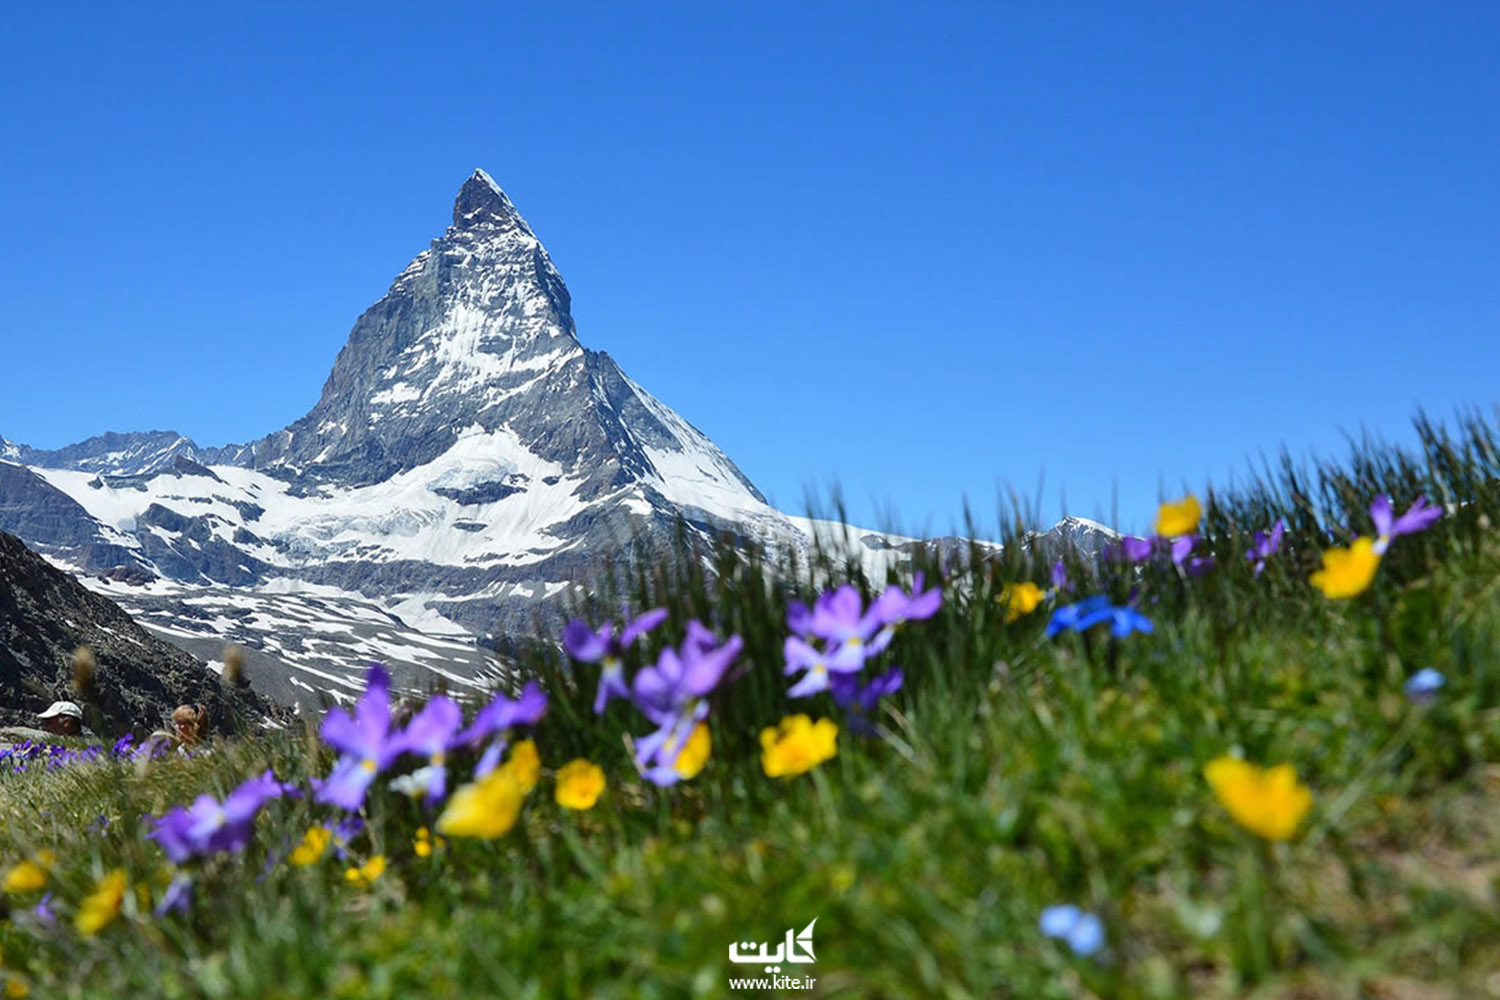 بهترین کشوردنیا برای کوهنوردی سوئیس